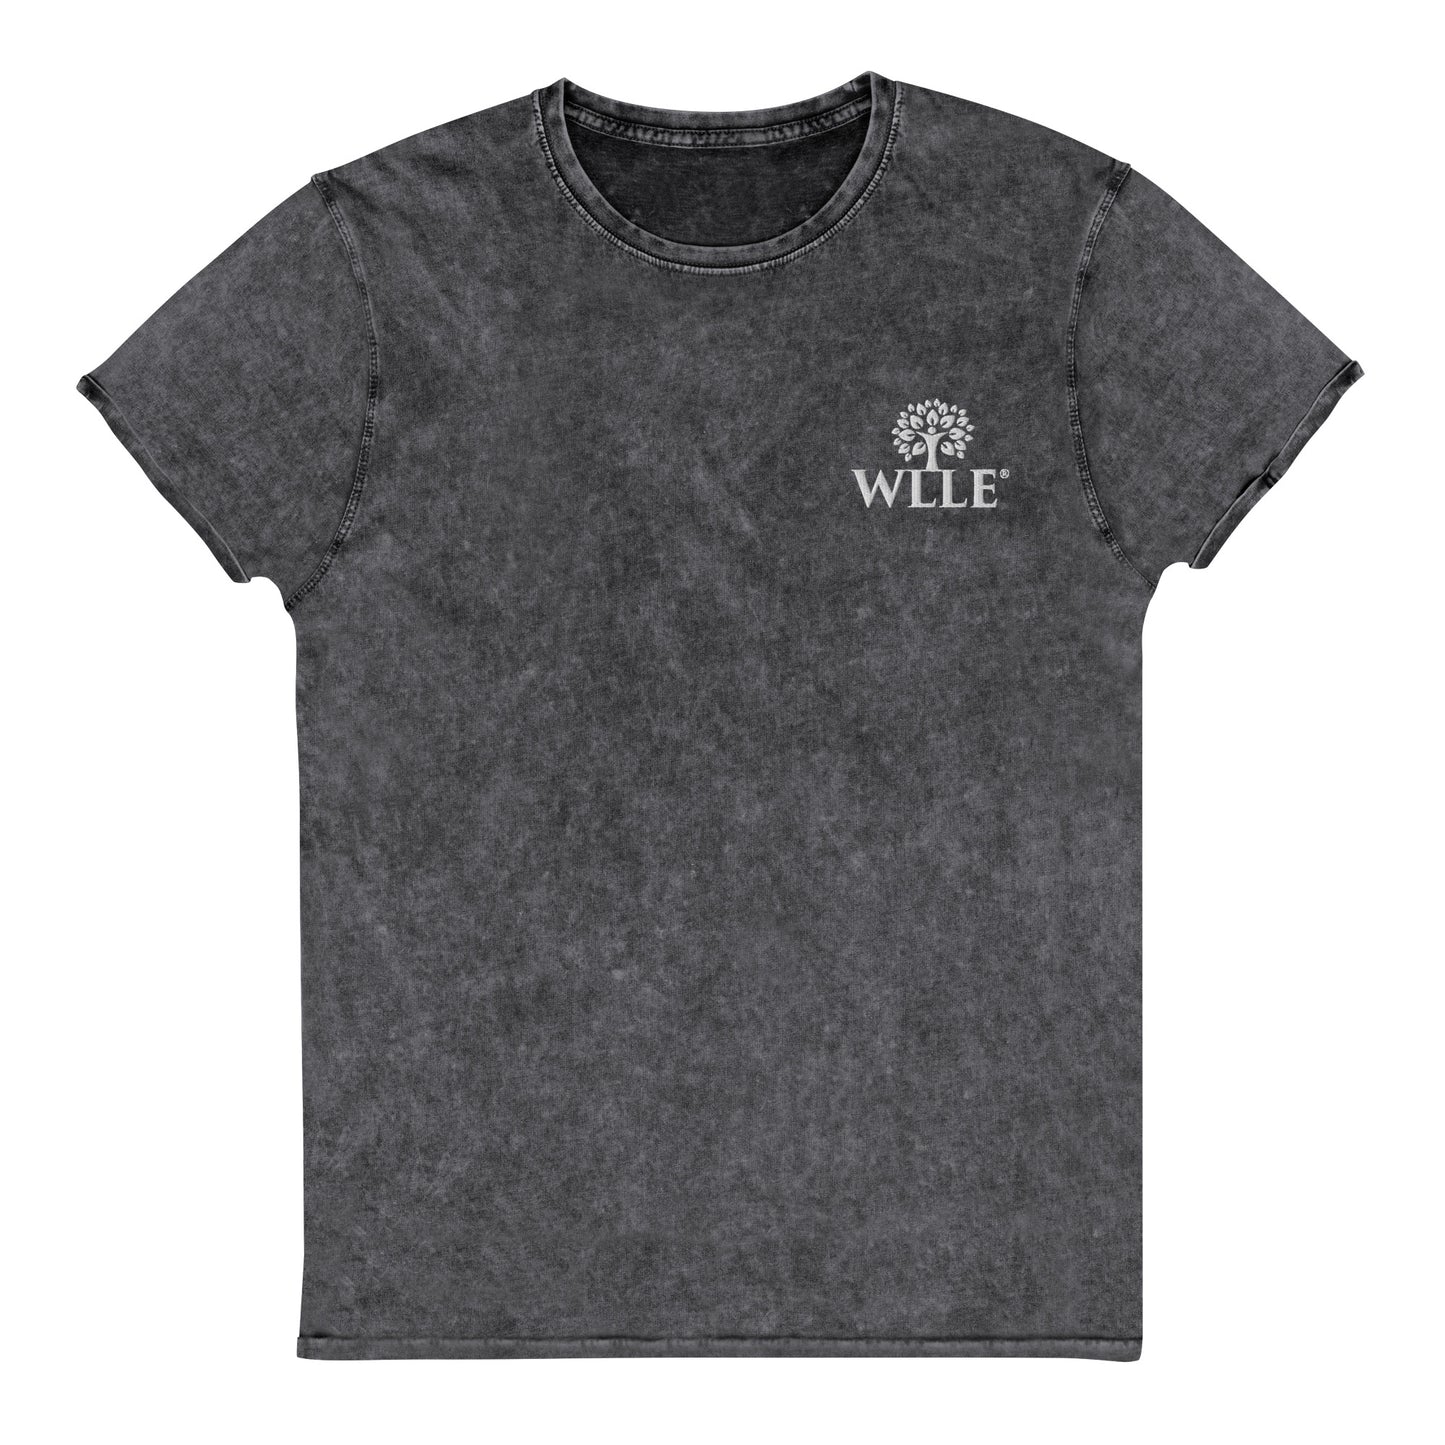 WLLE Women's Denim T-Shirt